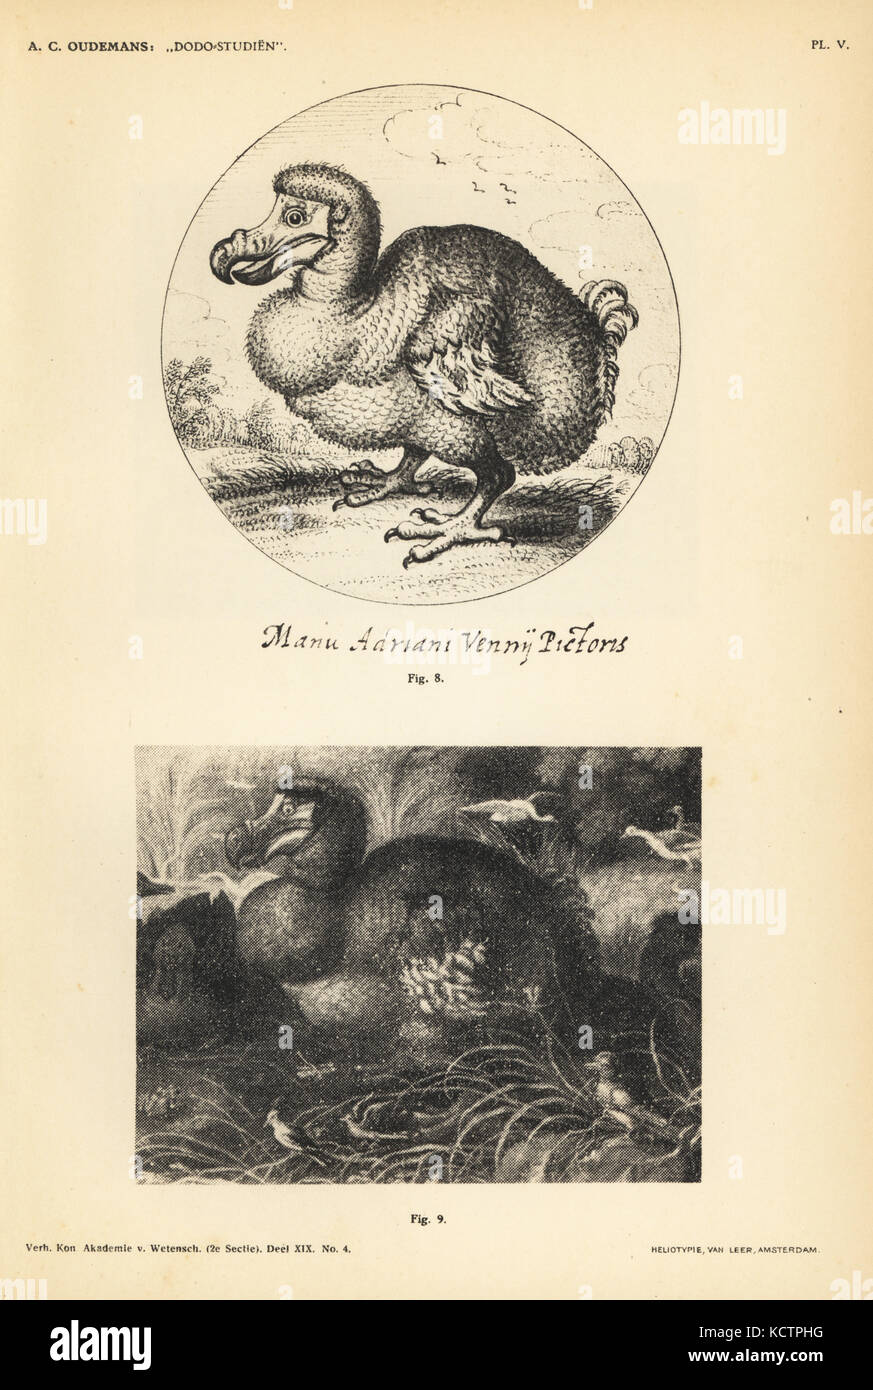 Dodo by Adriaen van de Venne, male, 1626 (8) and dodo by Gillis de Hondecoeter (Honderkoeter), male, 1626 (9). Heliotype by Van Leer from Dr. Anthonie Cornelis Oudemans' Dodo Studies, Amsterdam, Johannes Muller, 1917. Stock Photo